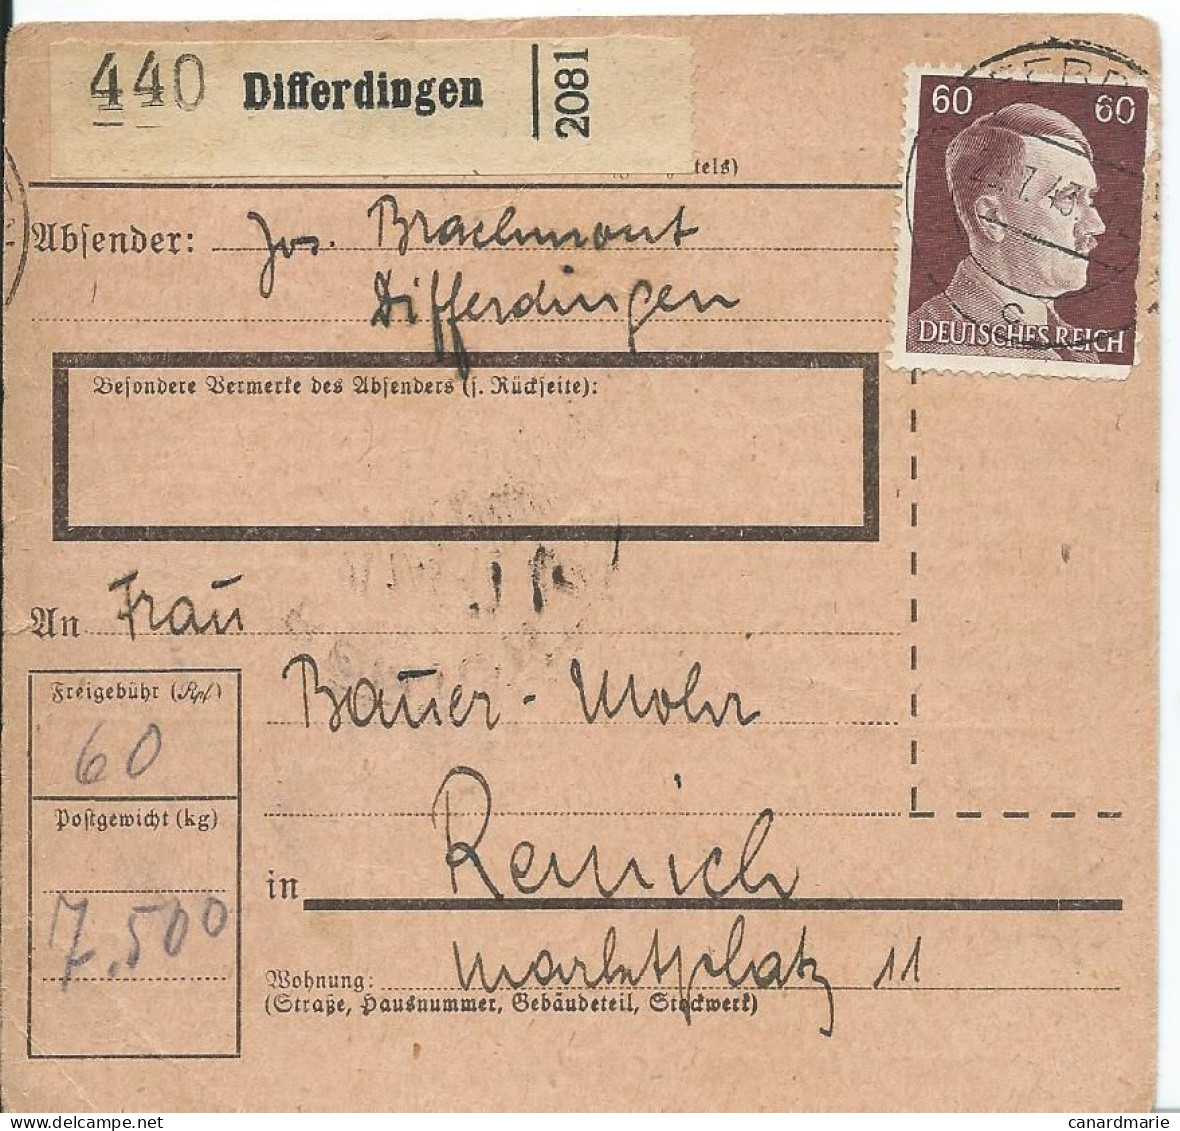 2 BULLETINS DE COLIS POSTAUX 1943/44 AVEC ETIQUETTES DE DIFFERDINGEN - 1940-1944 Deutsche Besatzung